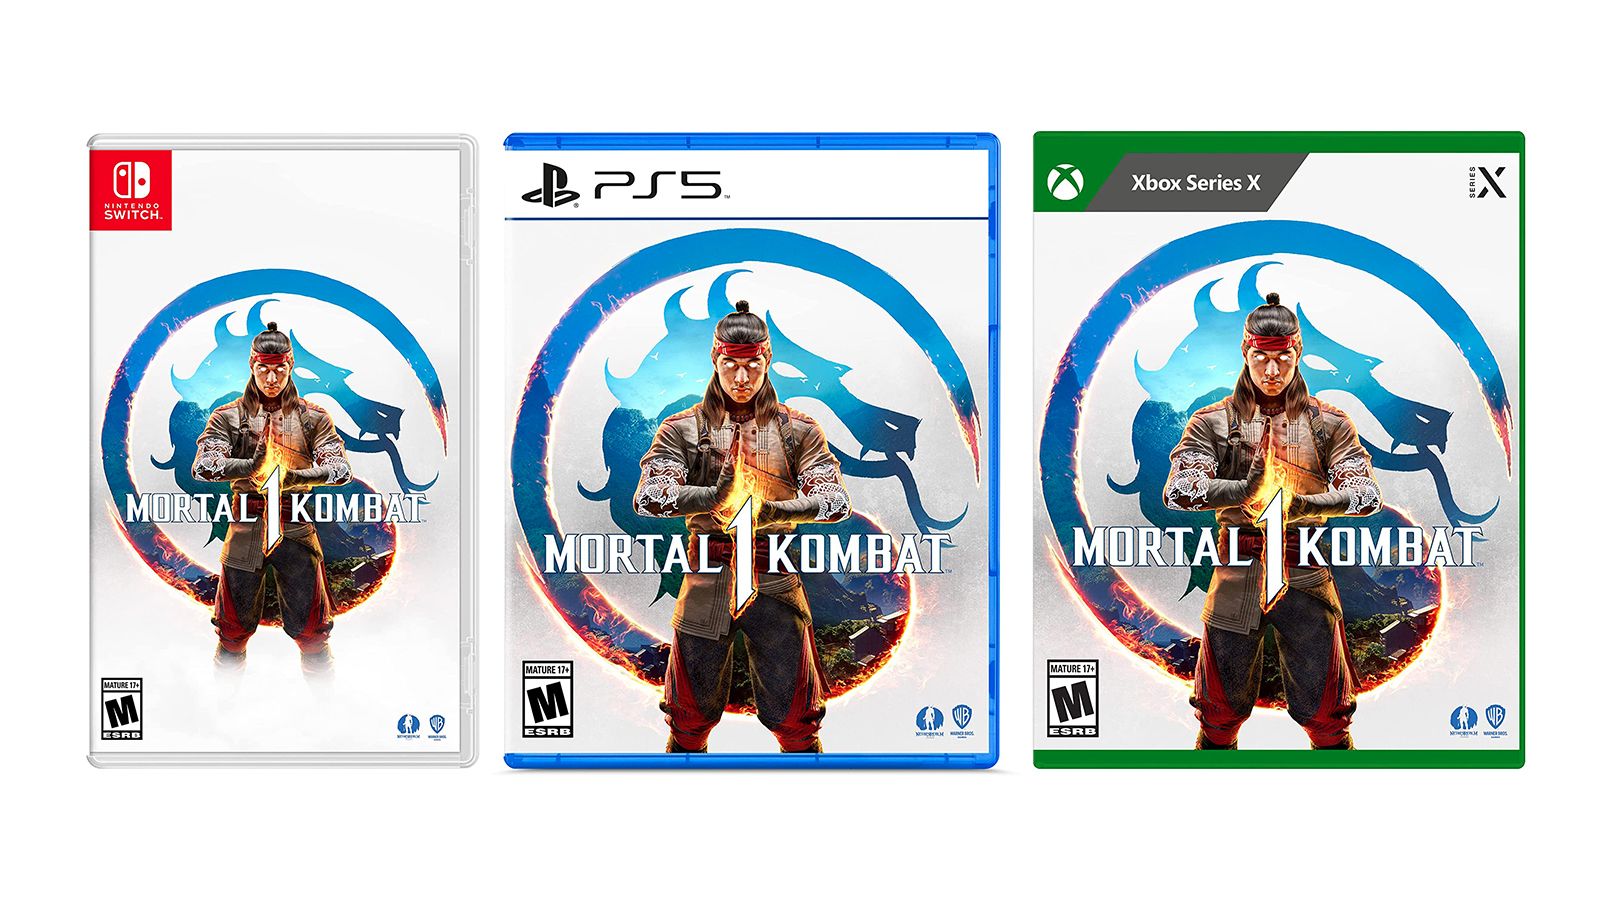 Mortal Kombat 1 PS5 Playstation 5